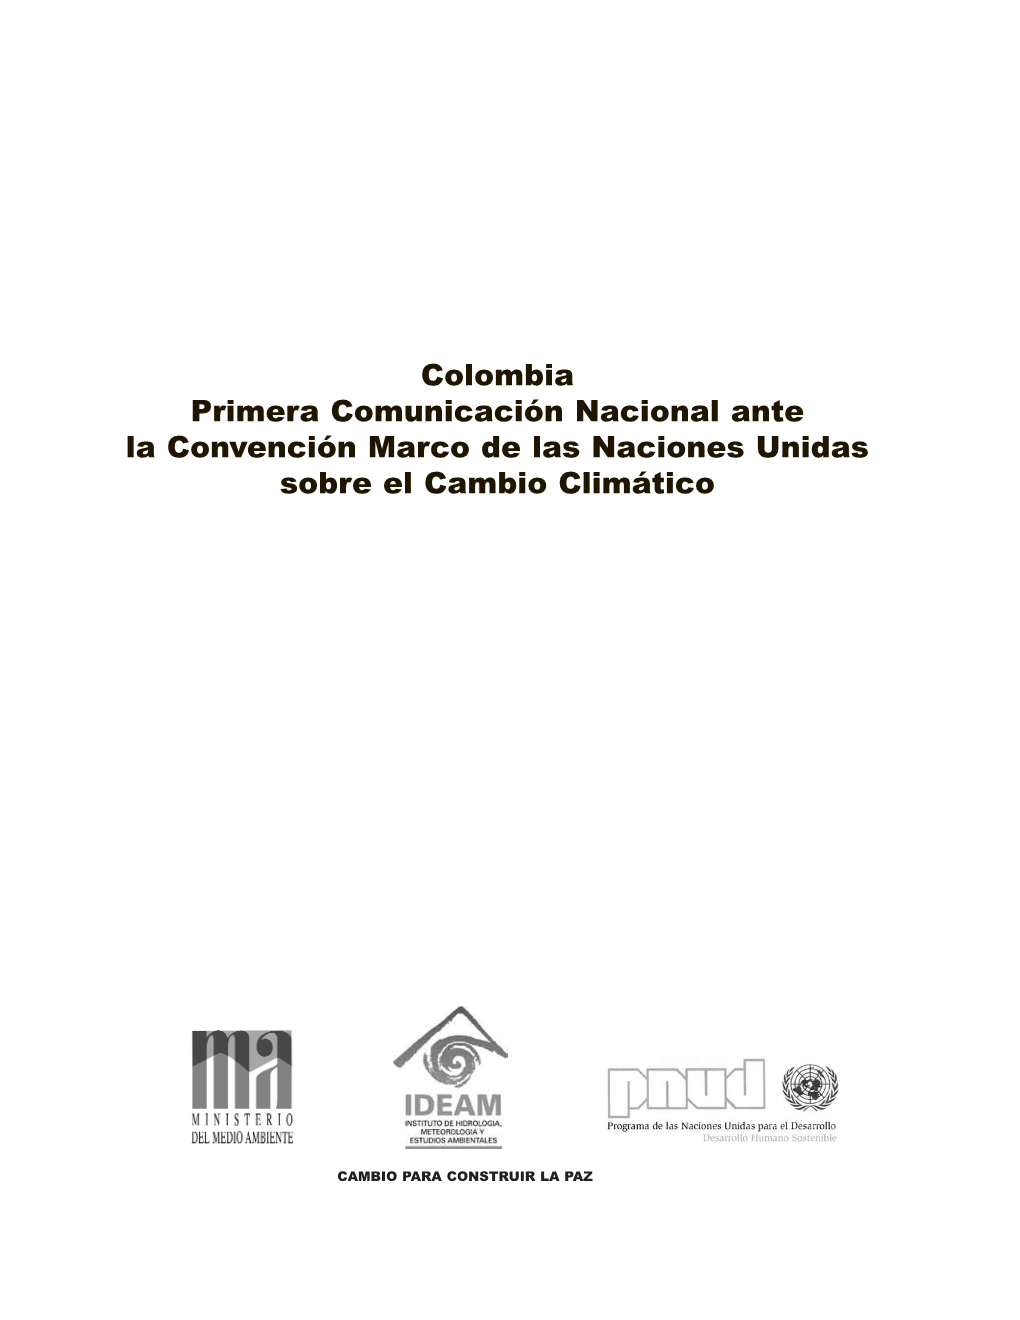 Colombia Primera Comunicación Nacional Ante La Convención Marco De Las Naciones Unidas Sobre El Cambio Climático